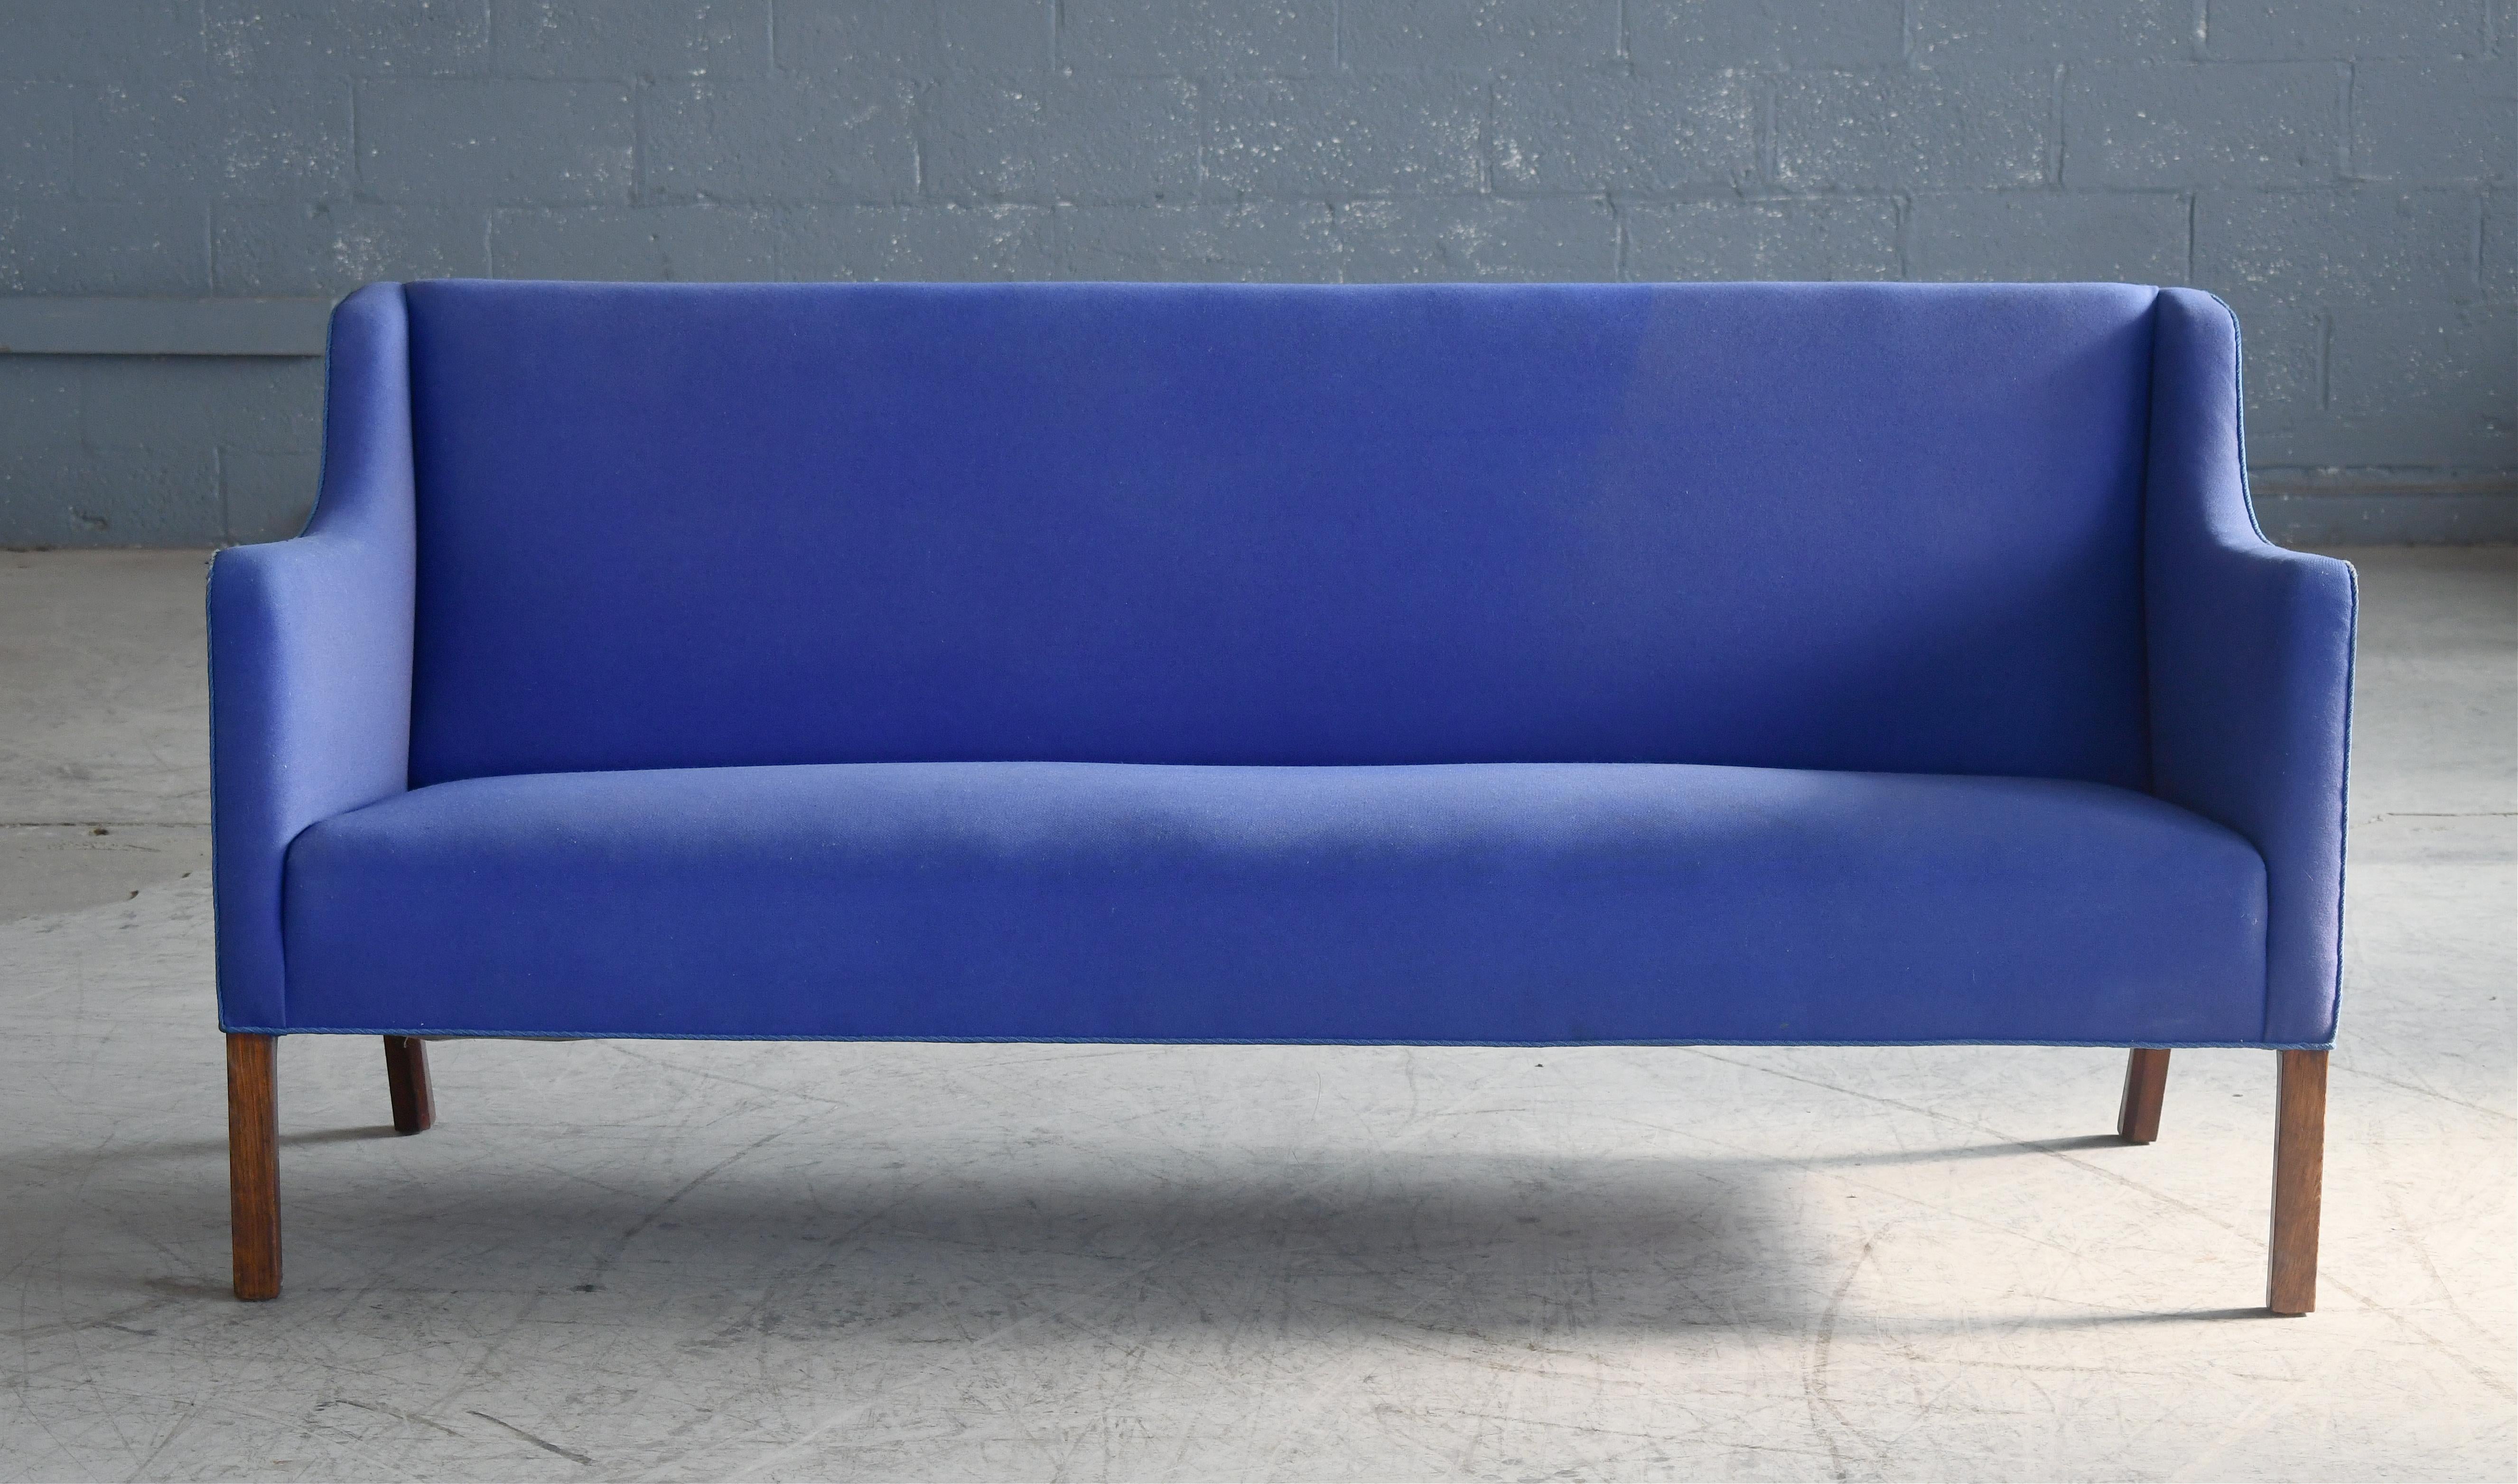 Schönes klassisches dänisches Design, sehr ähnlich dem Modell JH180 von Grete Jalk für Johannes Hansen. Das Design stammt aus den frühen 60er Jahren, aber dieses Sofa scheint irgendwann in den 1970er Jahren hergestellt worden zu sein. Einfaches,